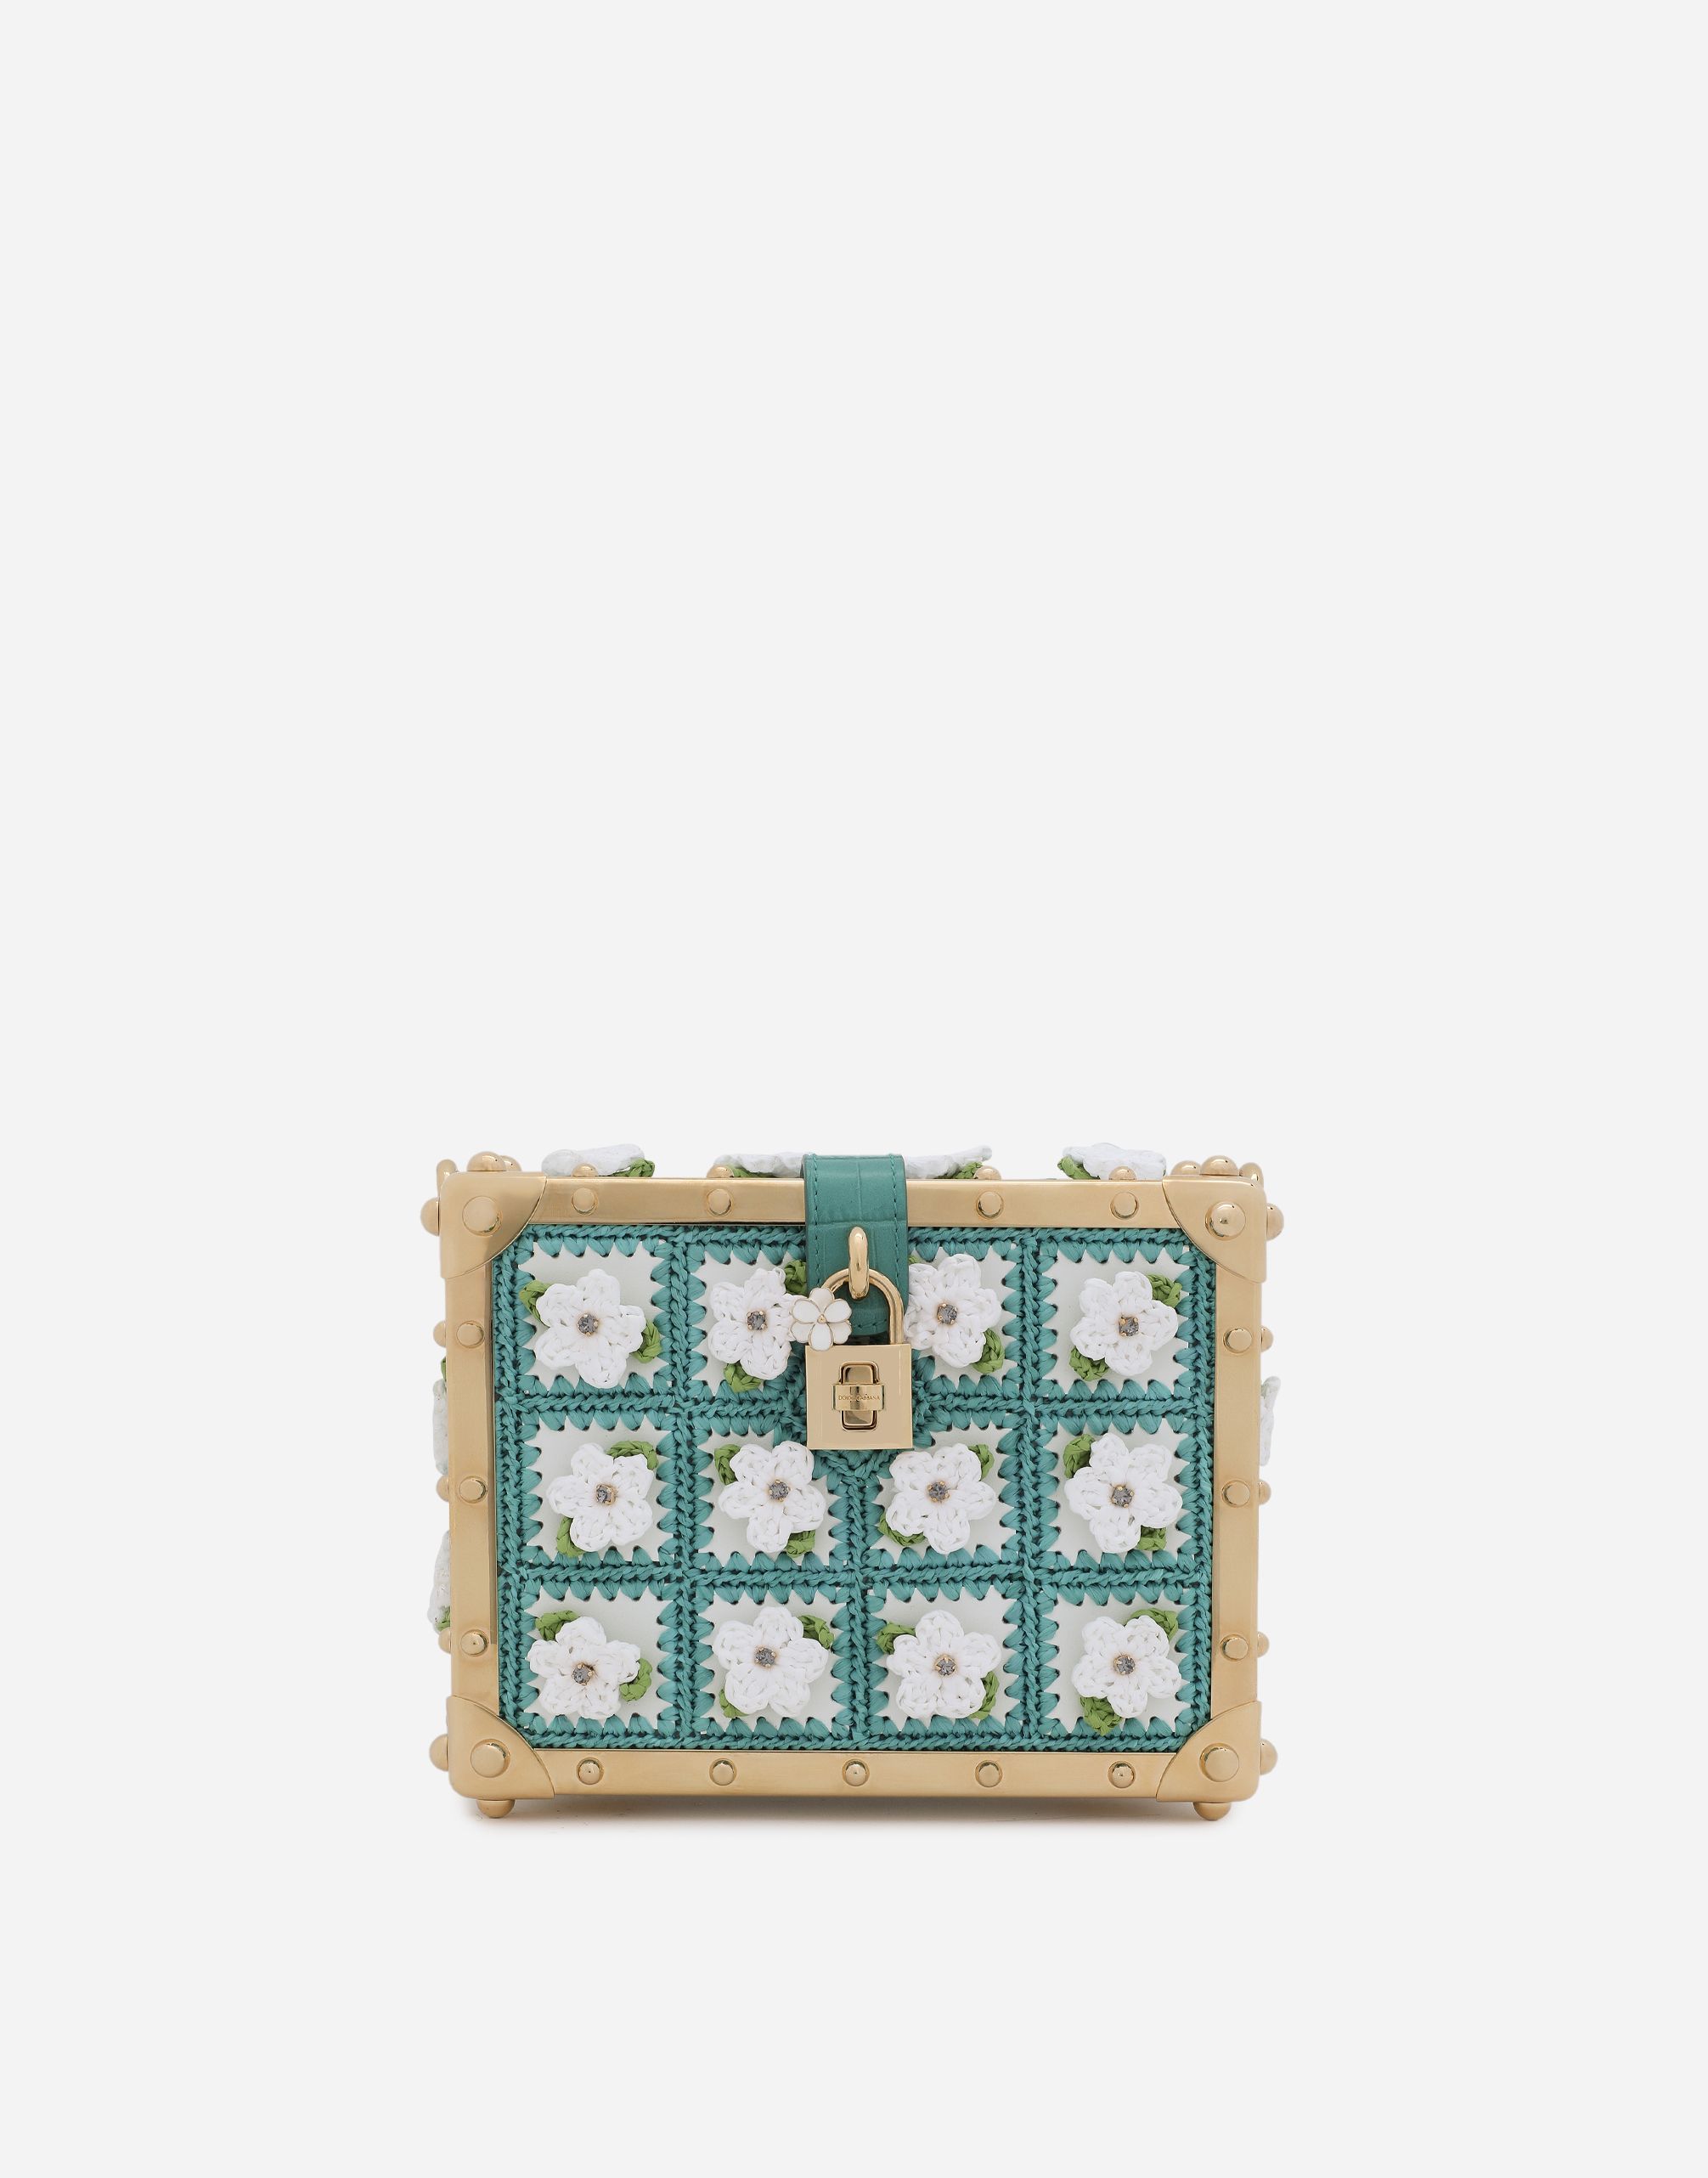 Foiled crocodile-print calfskin DG Girls bag | Dolce & Gabbana